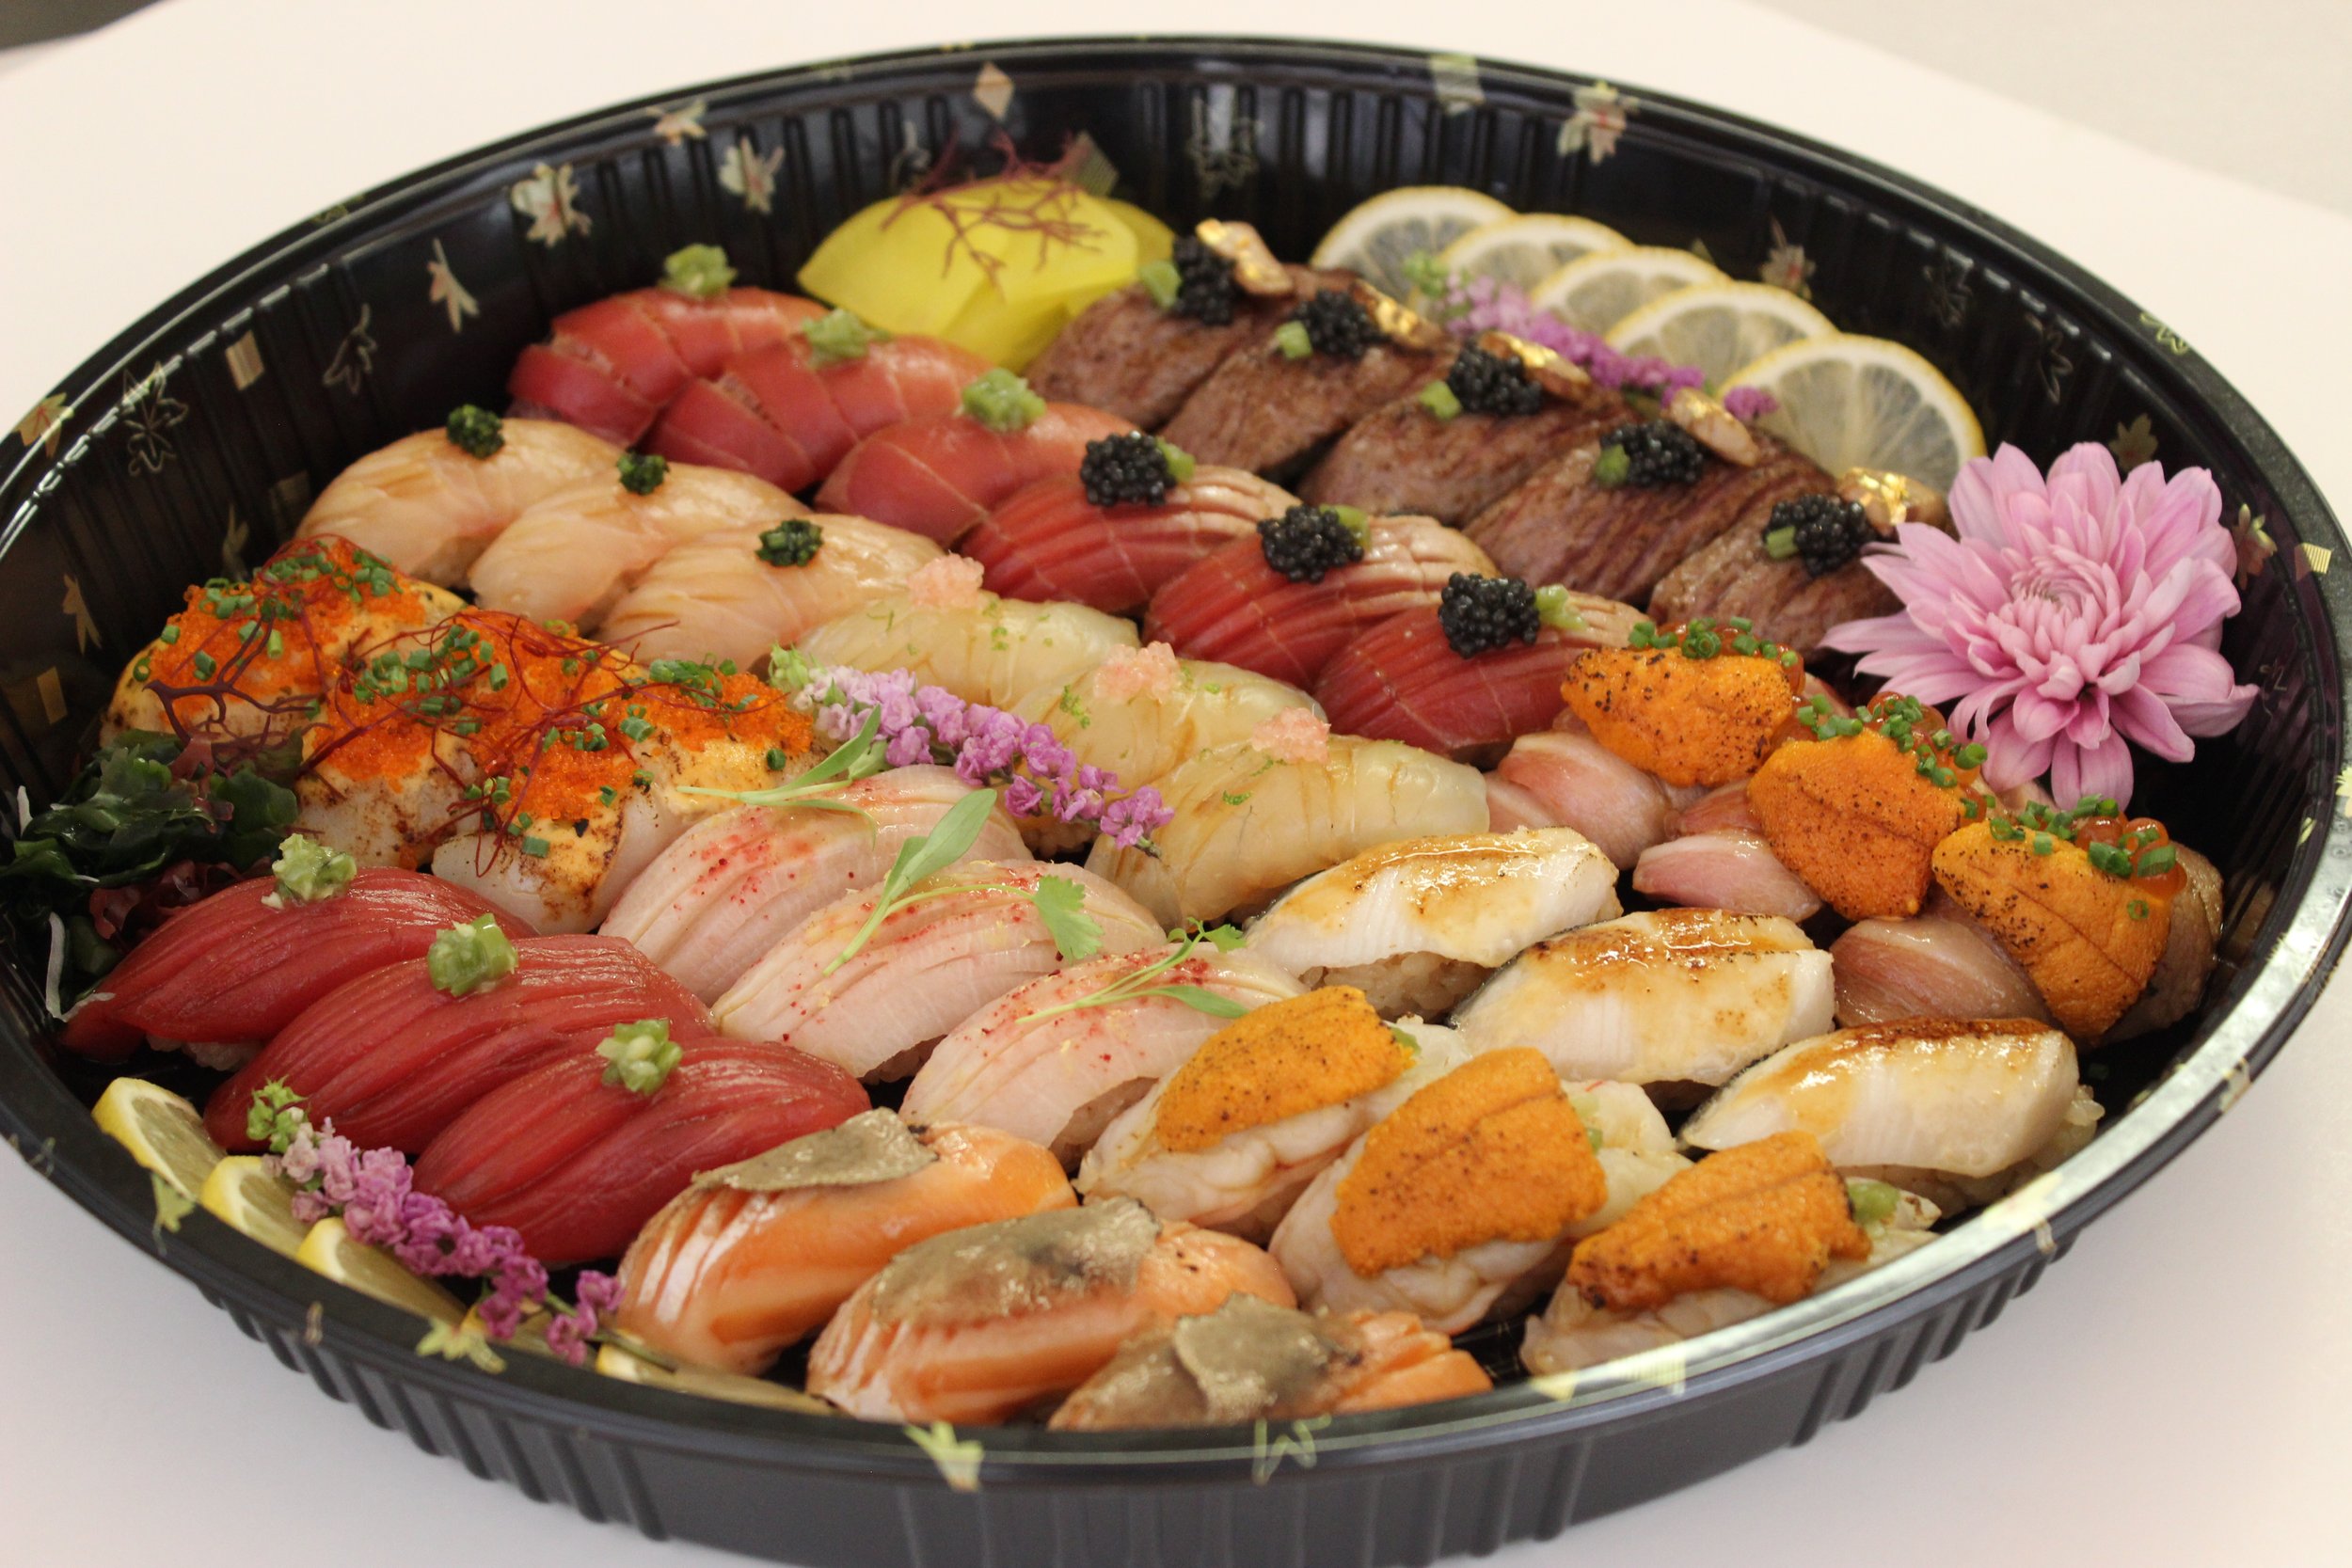 Okami Sushi Party Tray, 26 oz - Food 4 Less